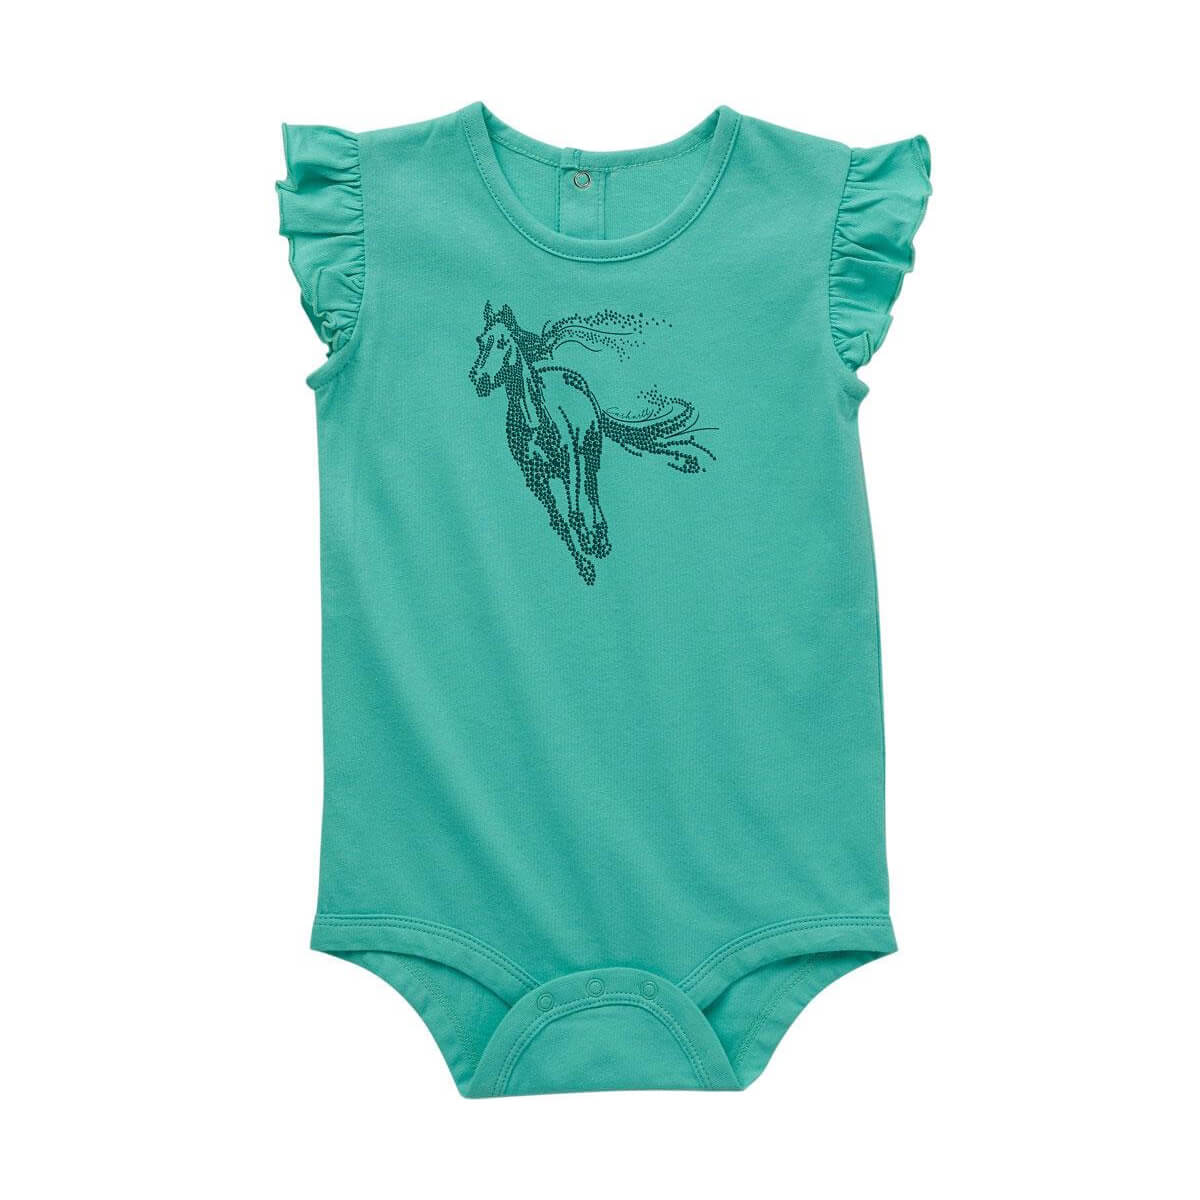 Carhartt Infant Girl's Short-Sleeve Horse Bodysuit - Green